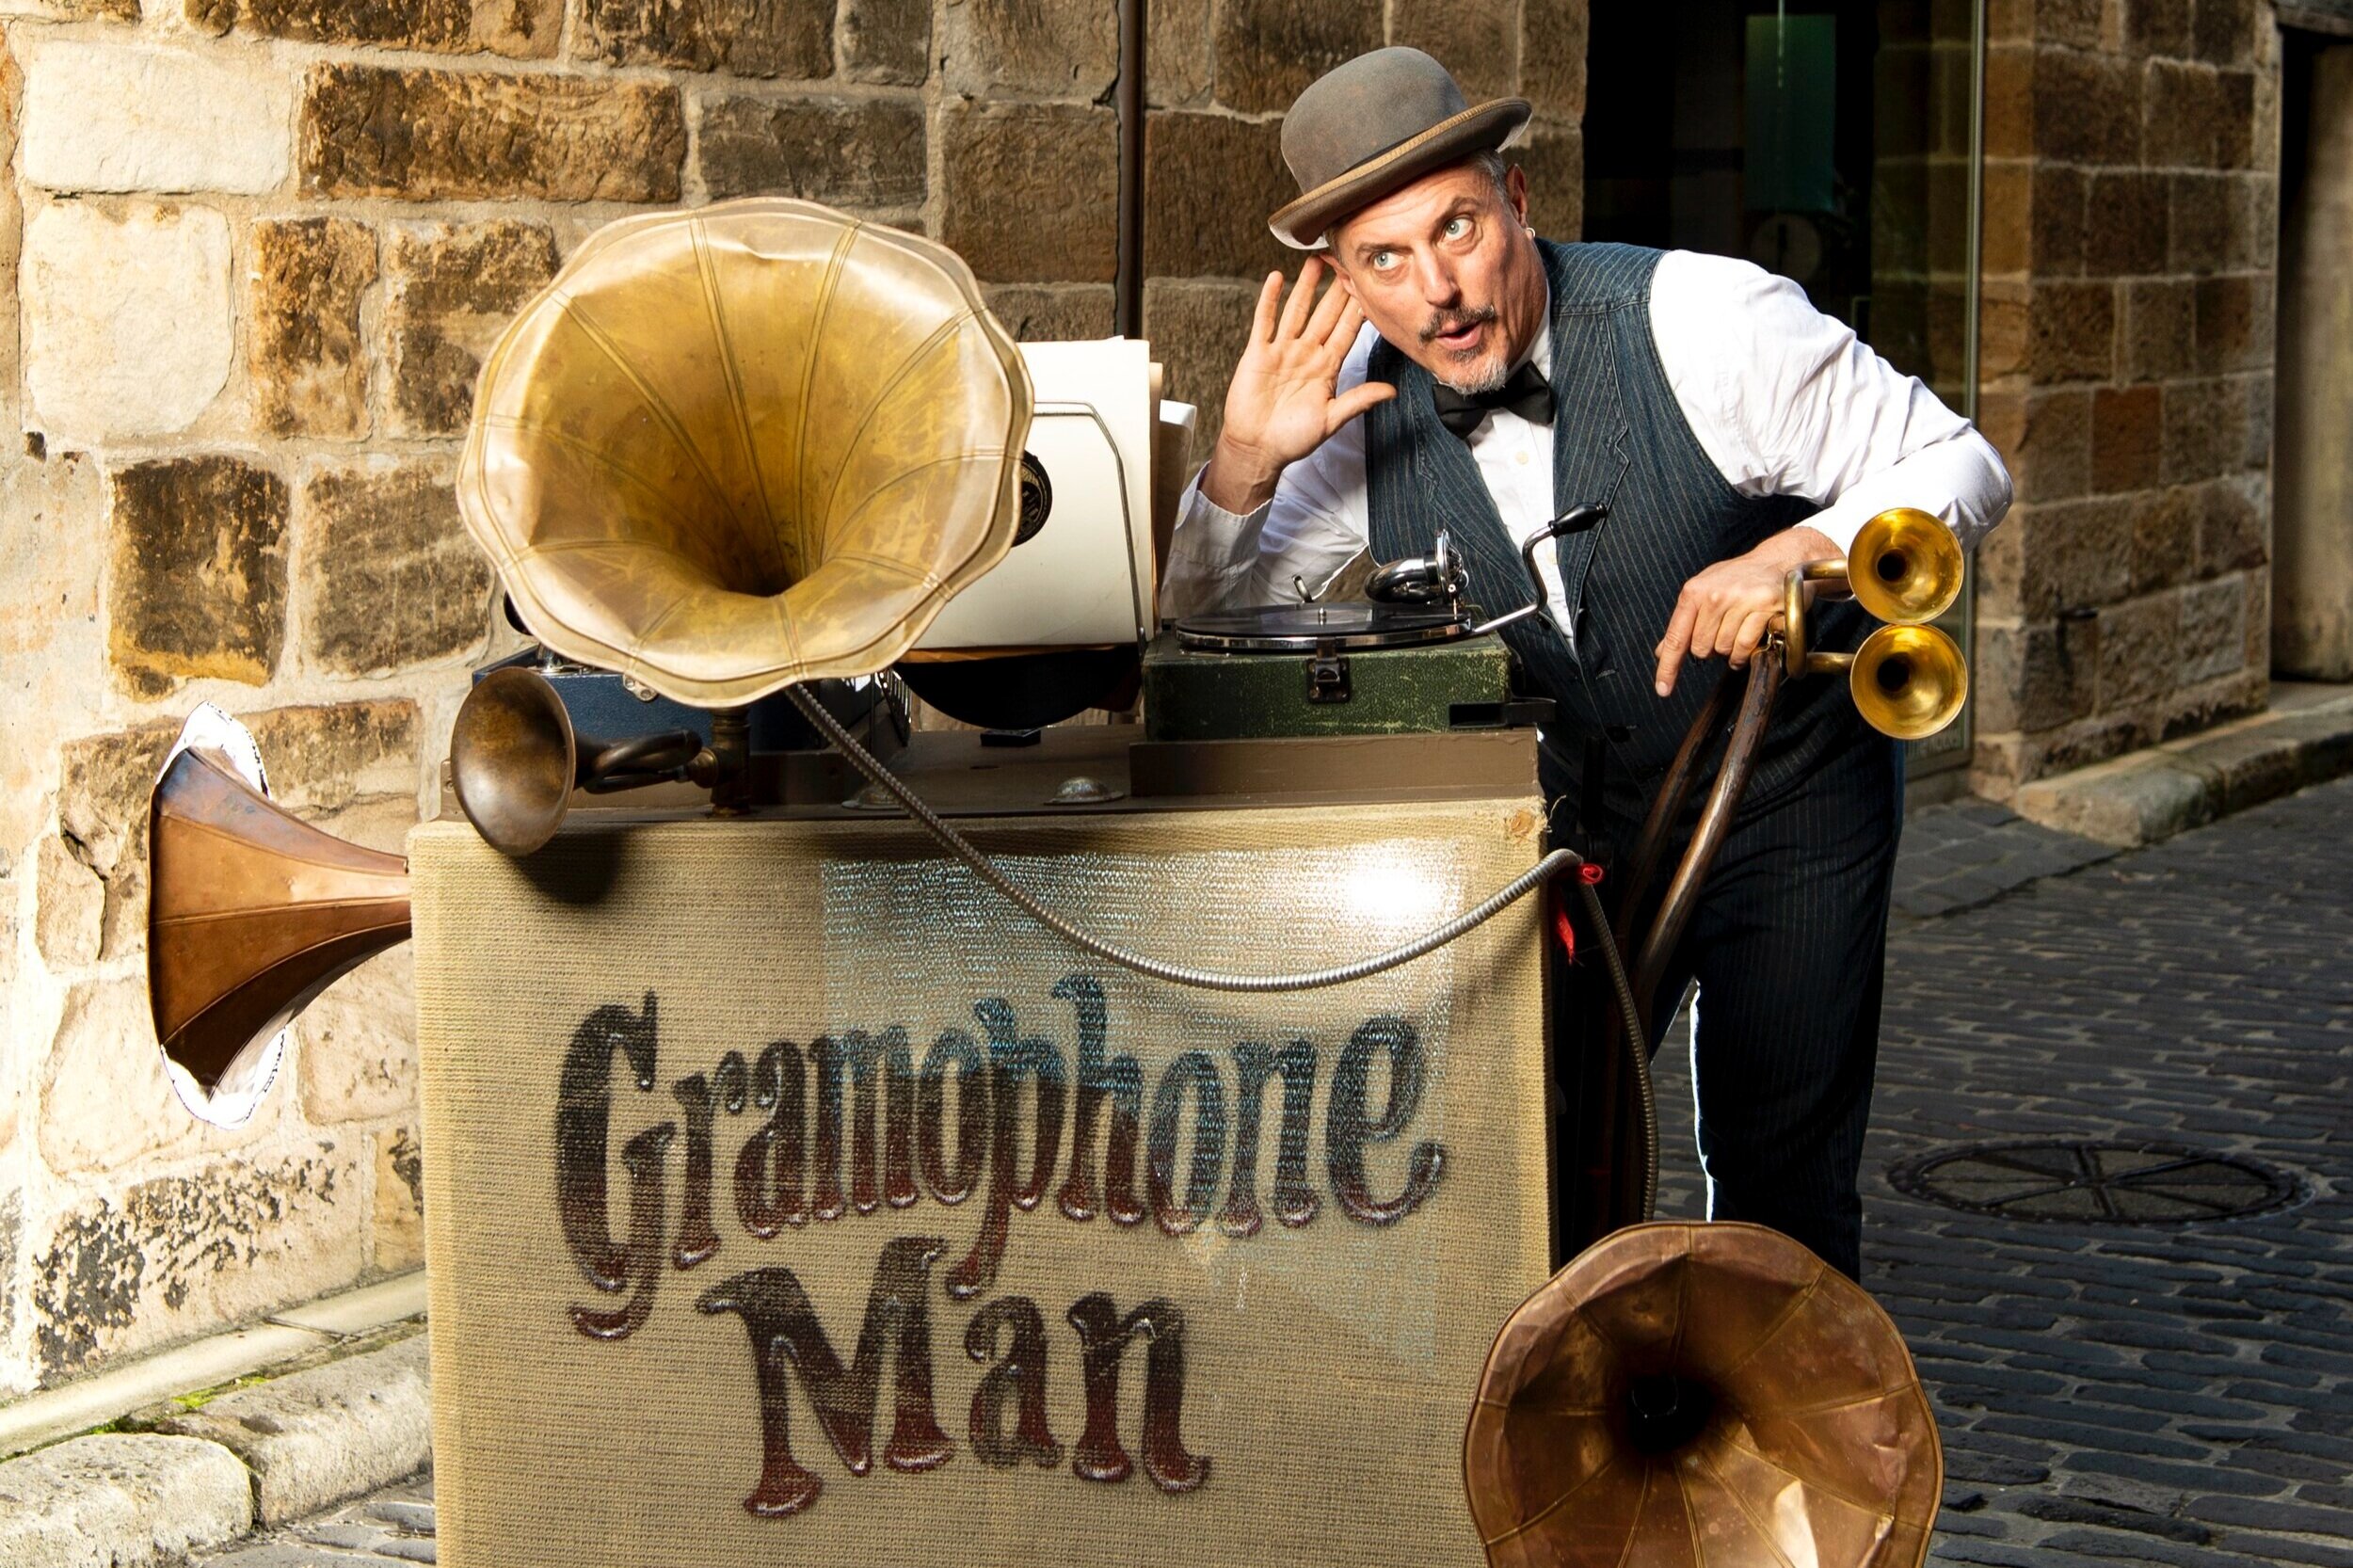 Gramophone Man